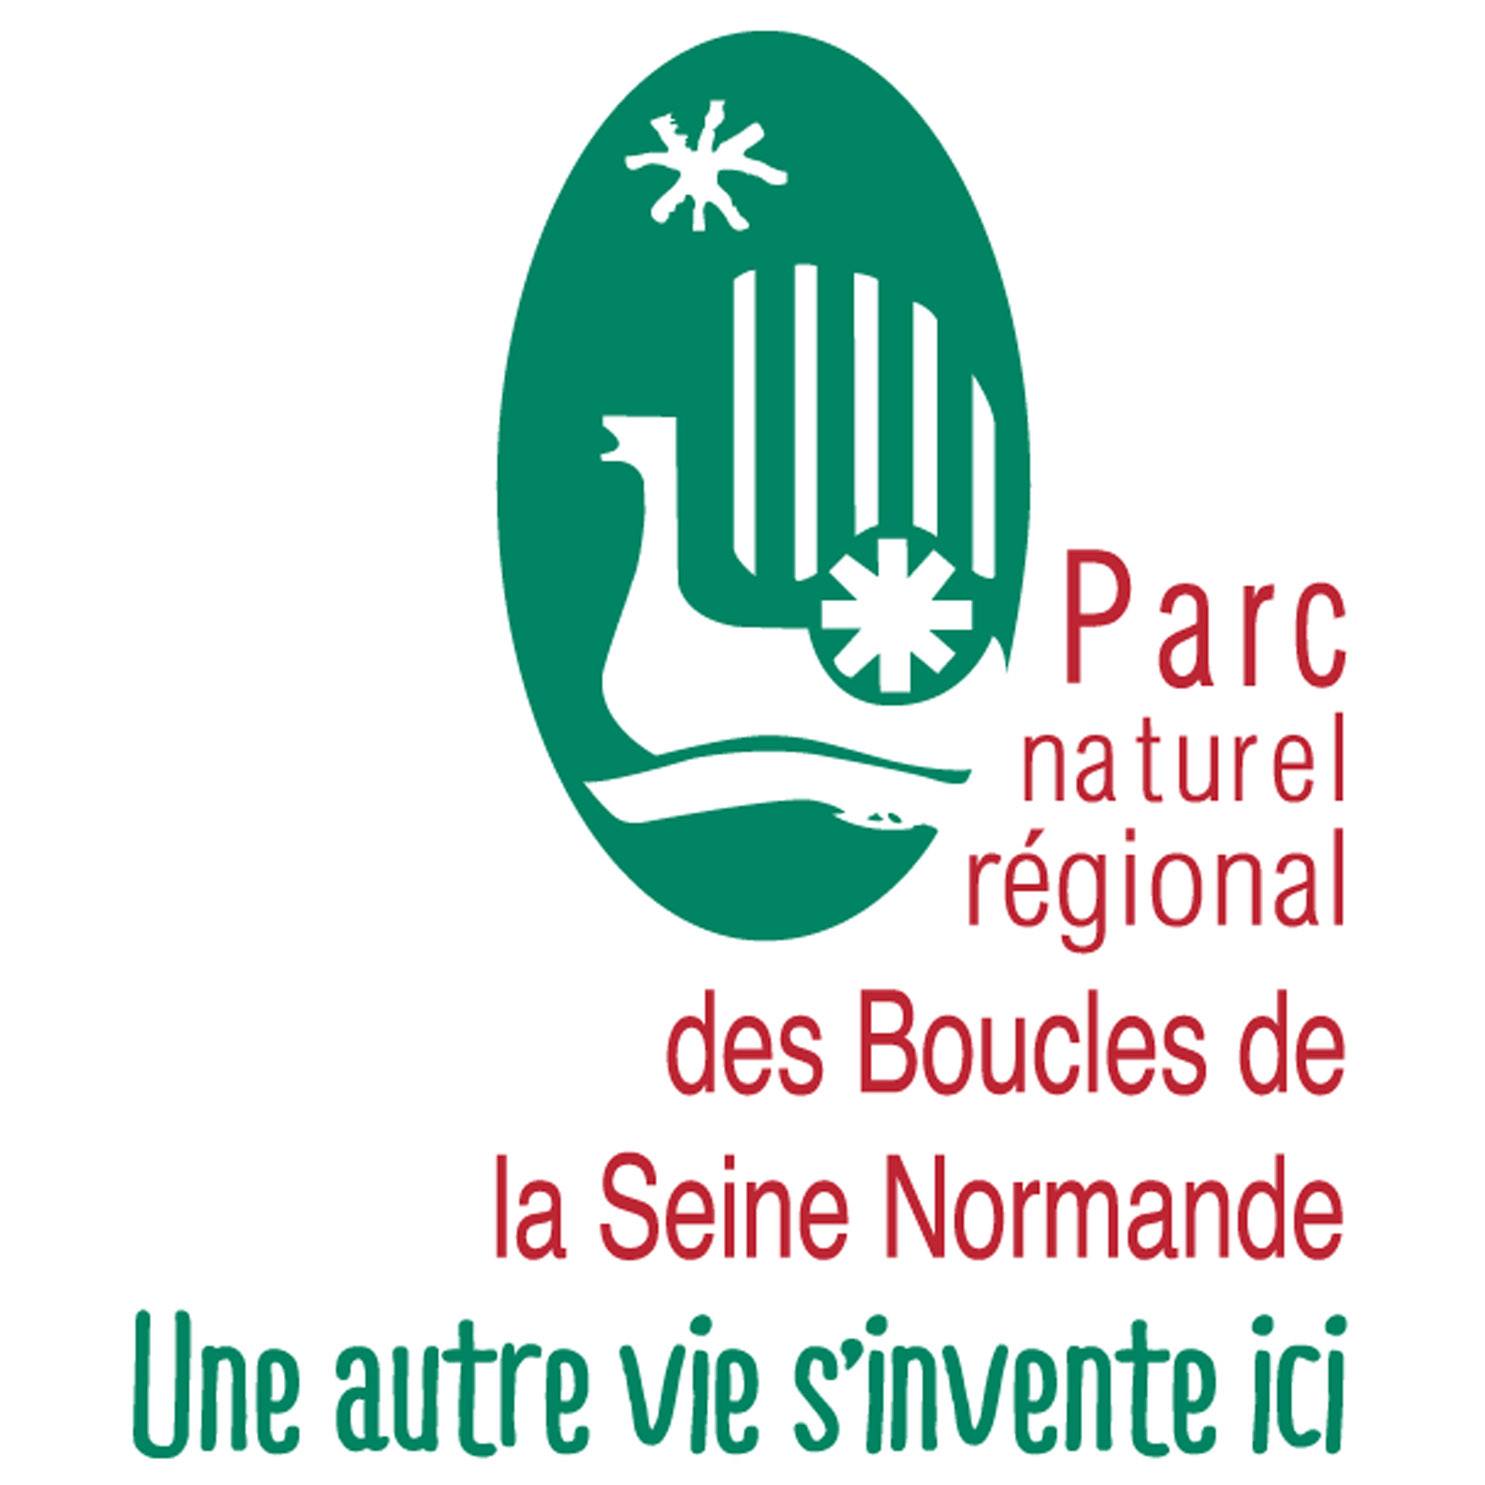 (c) Parc naturel régional des Boucles de la Seine Normande